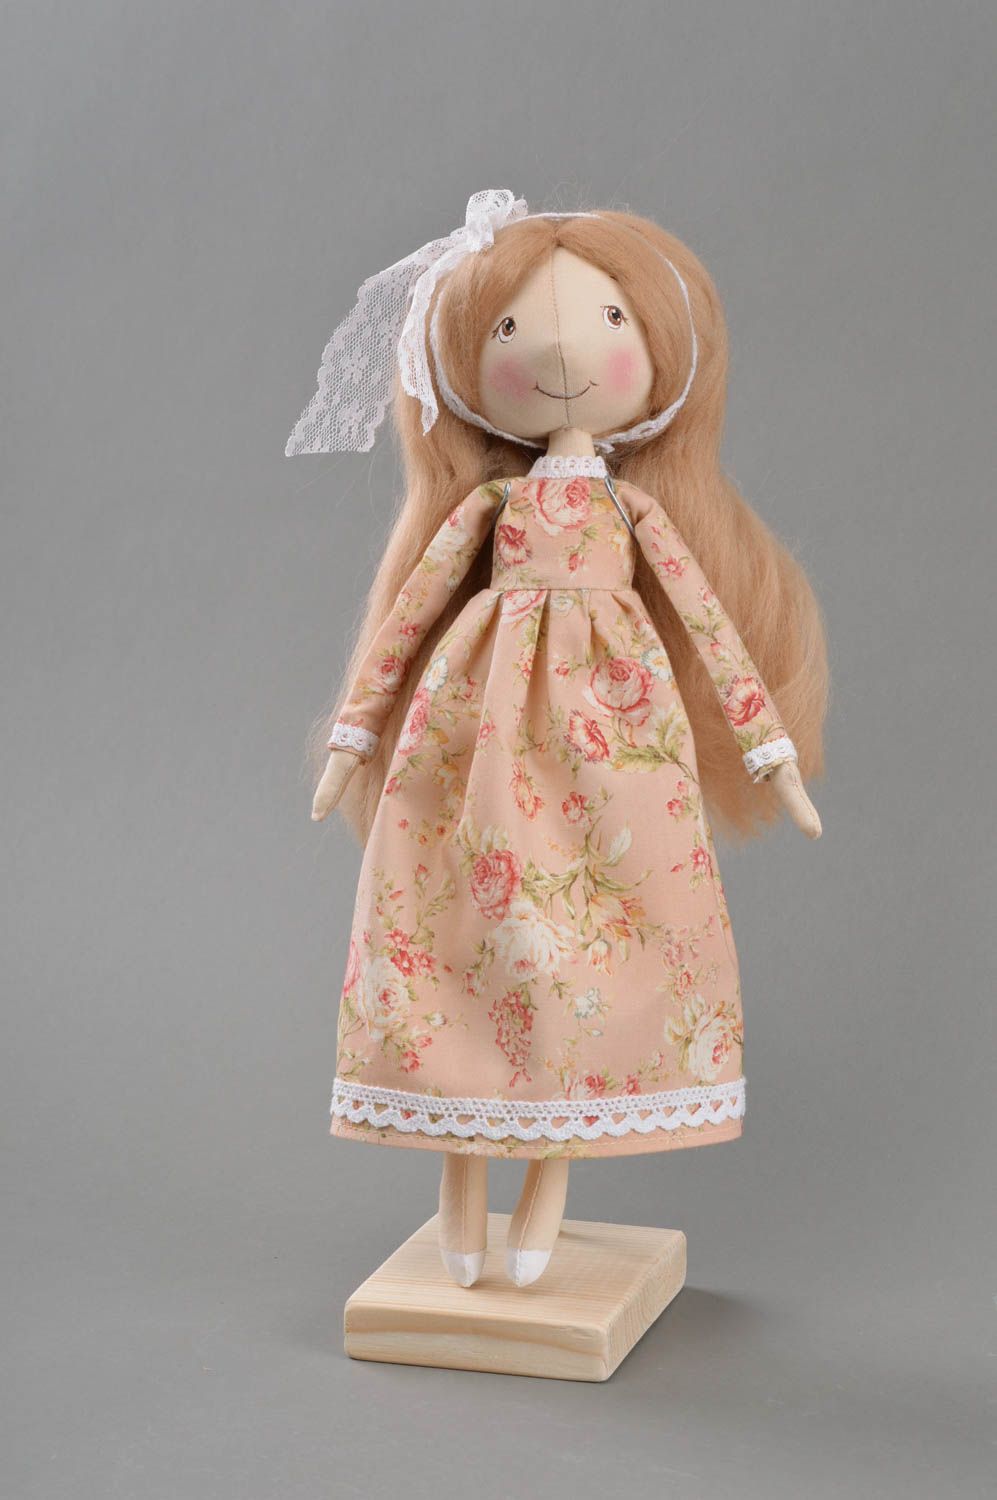 Игрушка кукла из ткани в платье с цветочным принтом на подставке ручная работа фото 1